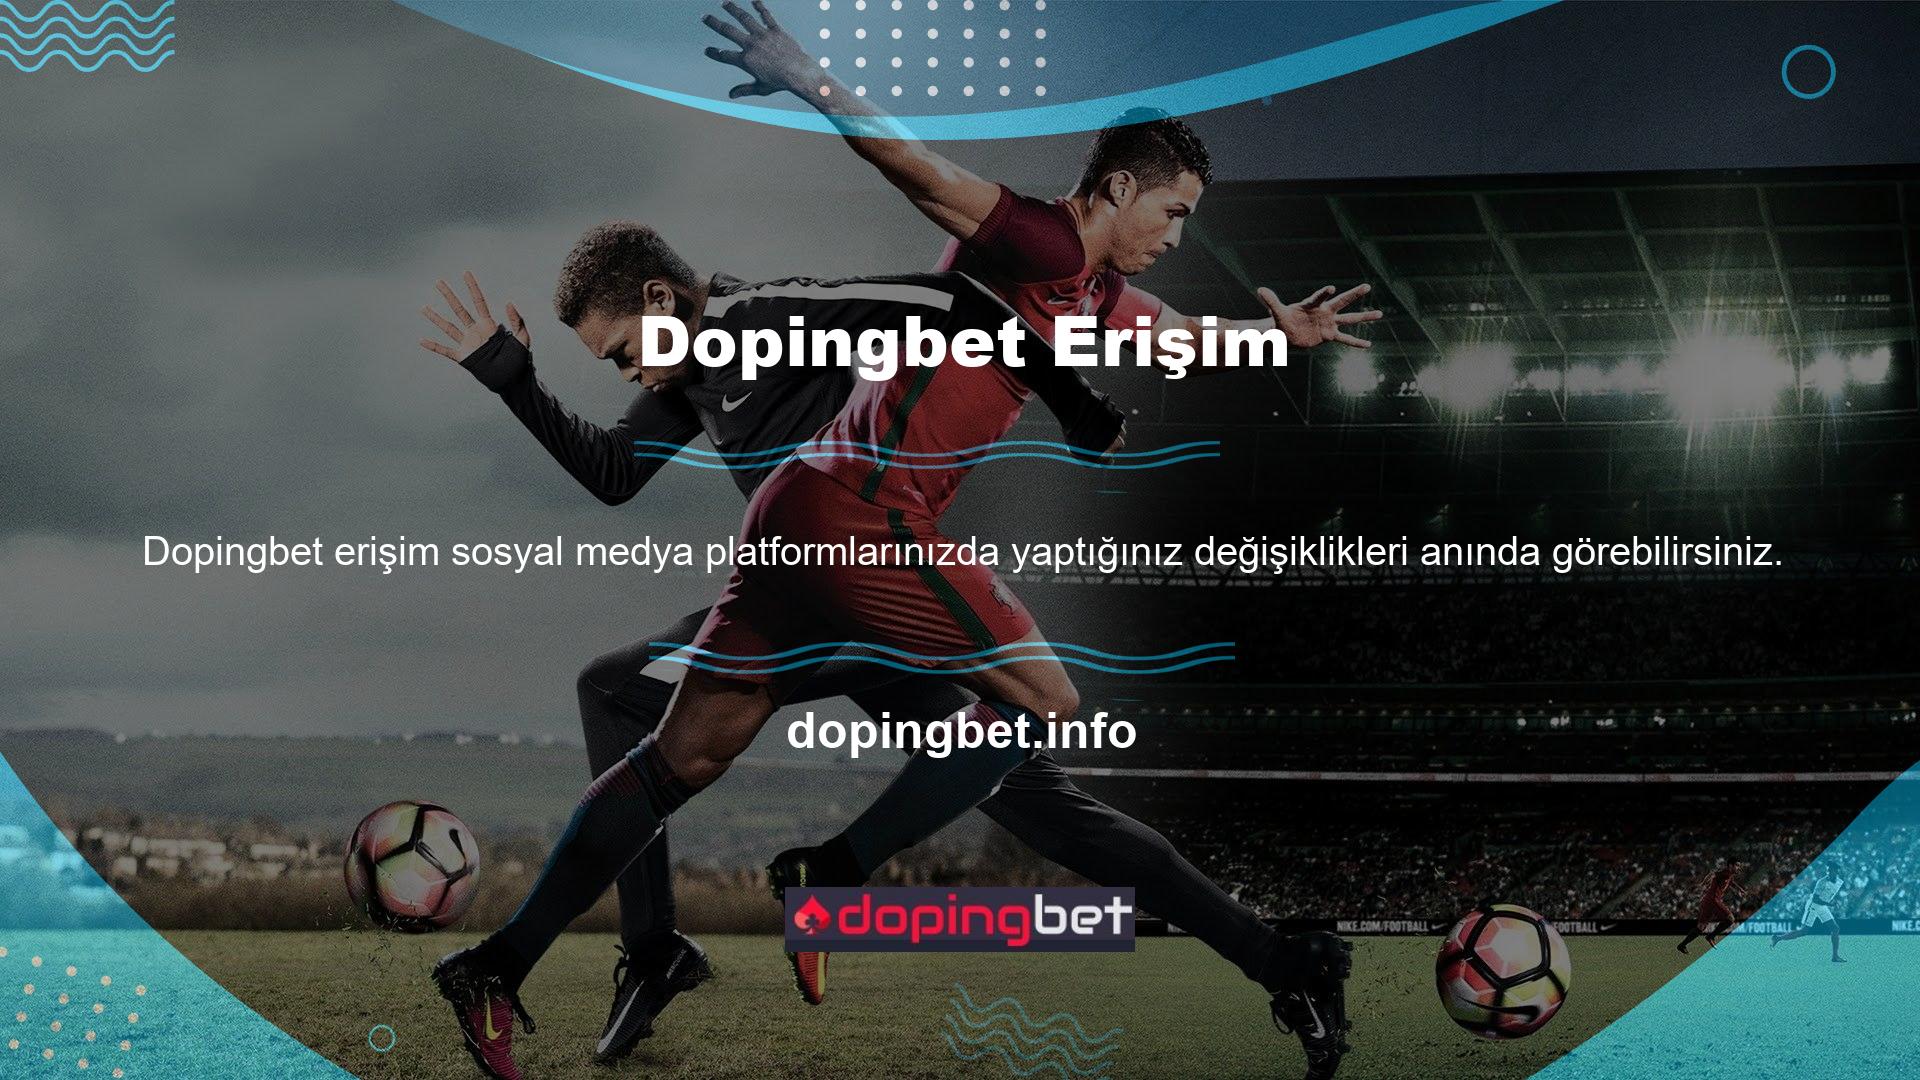 Ayrıca Dopingbet, eski siteye gelen kullanıcıları yönlendirme sayfası aracılığıyla yeni sorguya yönlendirir